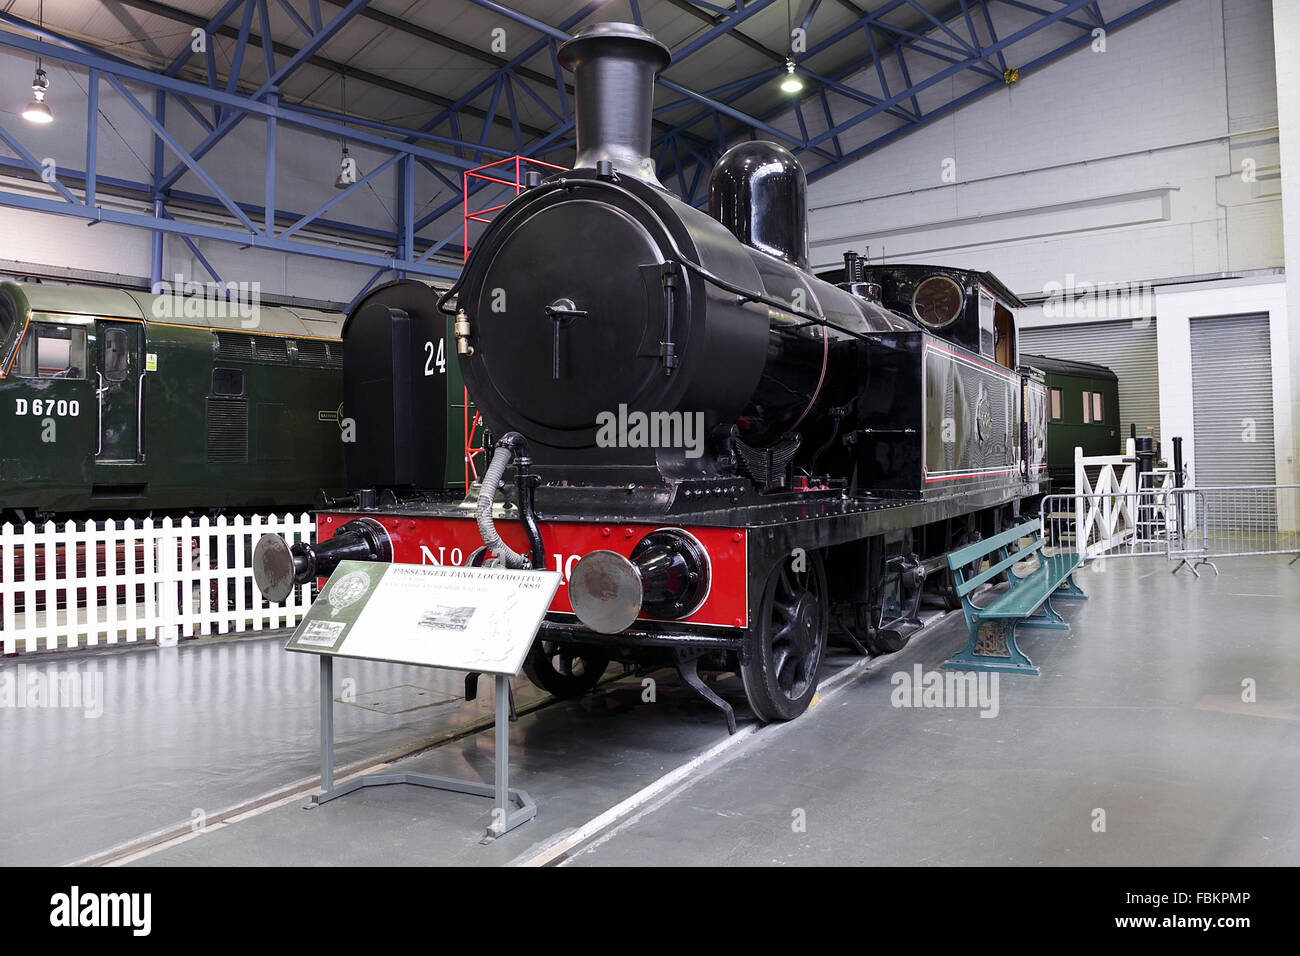 Images de locomotion historique moderne de jour, les locomotives et les merveilles de l'ingénierie aux niveaux national Railway Museum, York, Royaume-Uni. Banque D'Images